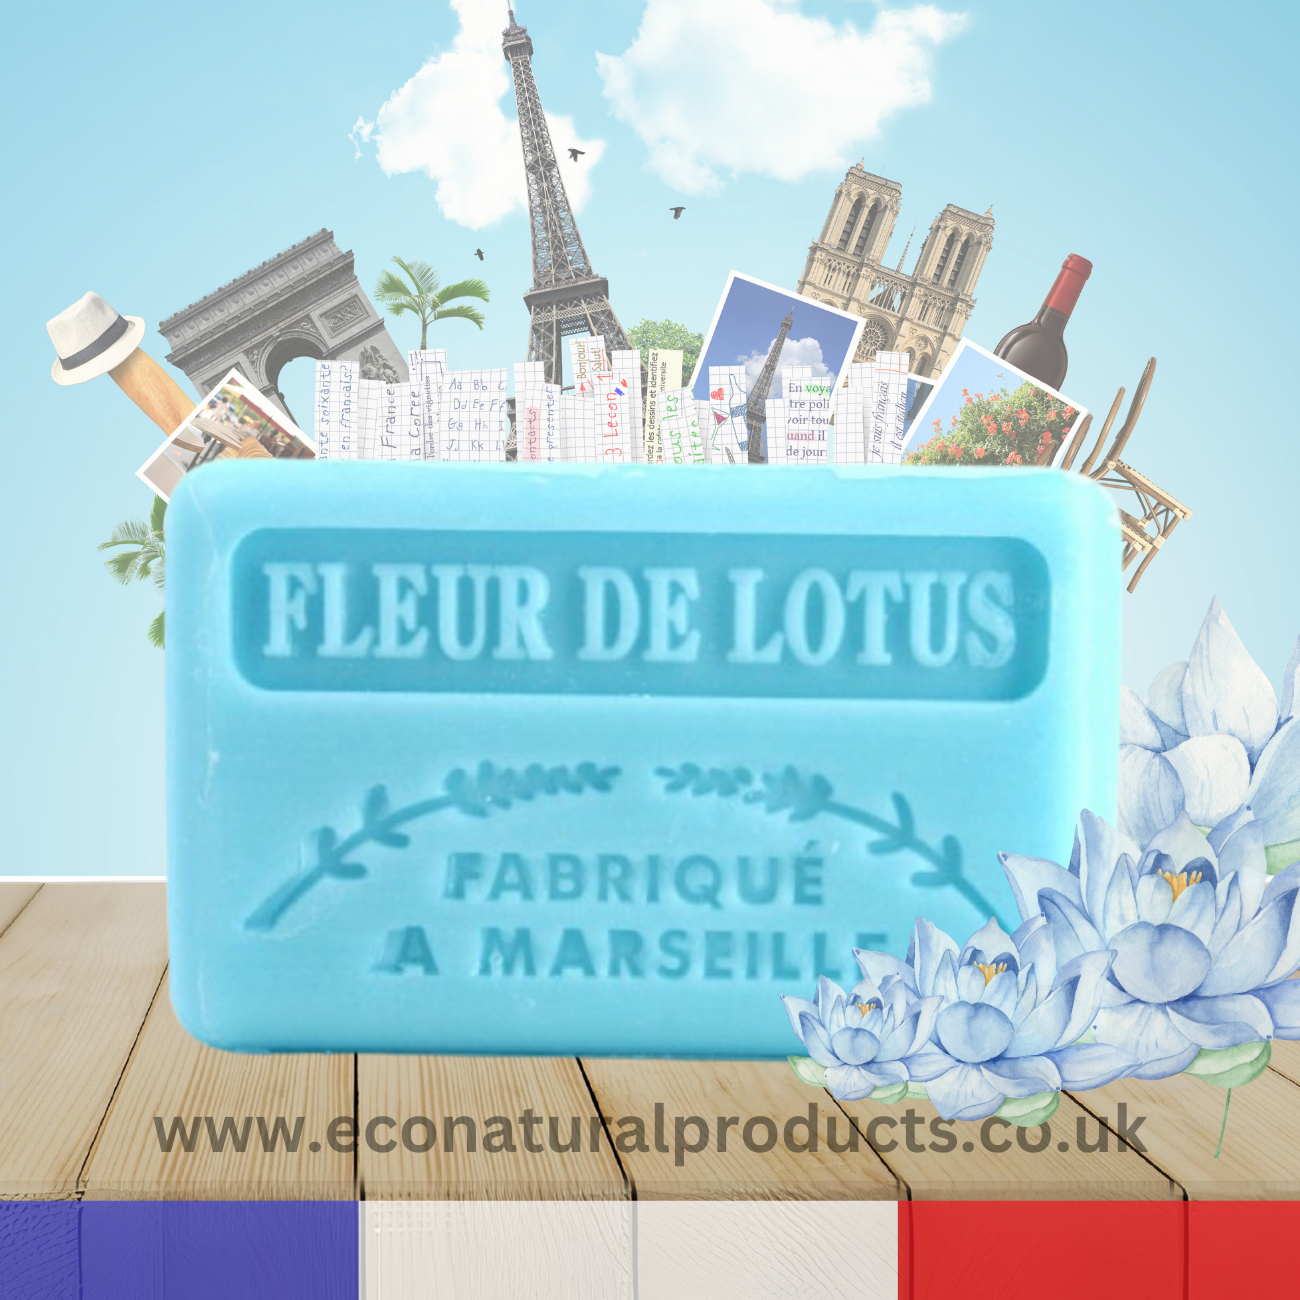 French Marseille Soap Fleur de Lotus (Lotus Flower) 60g